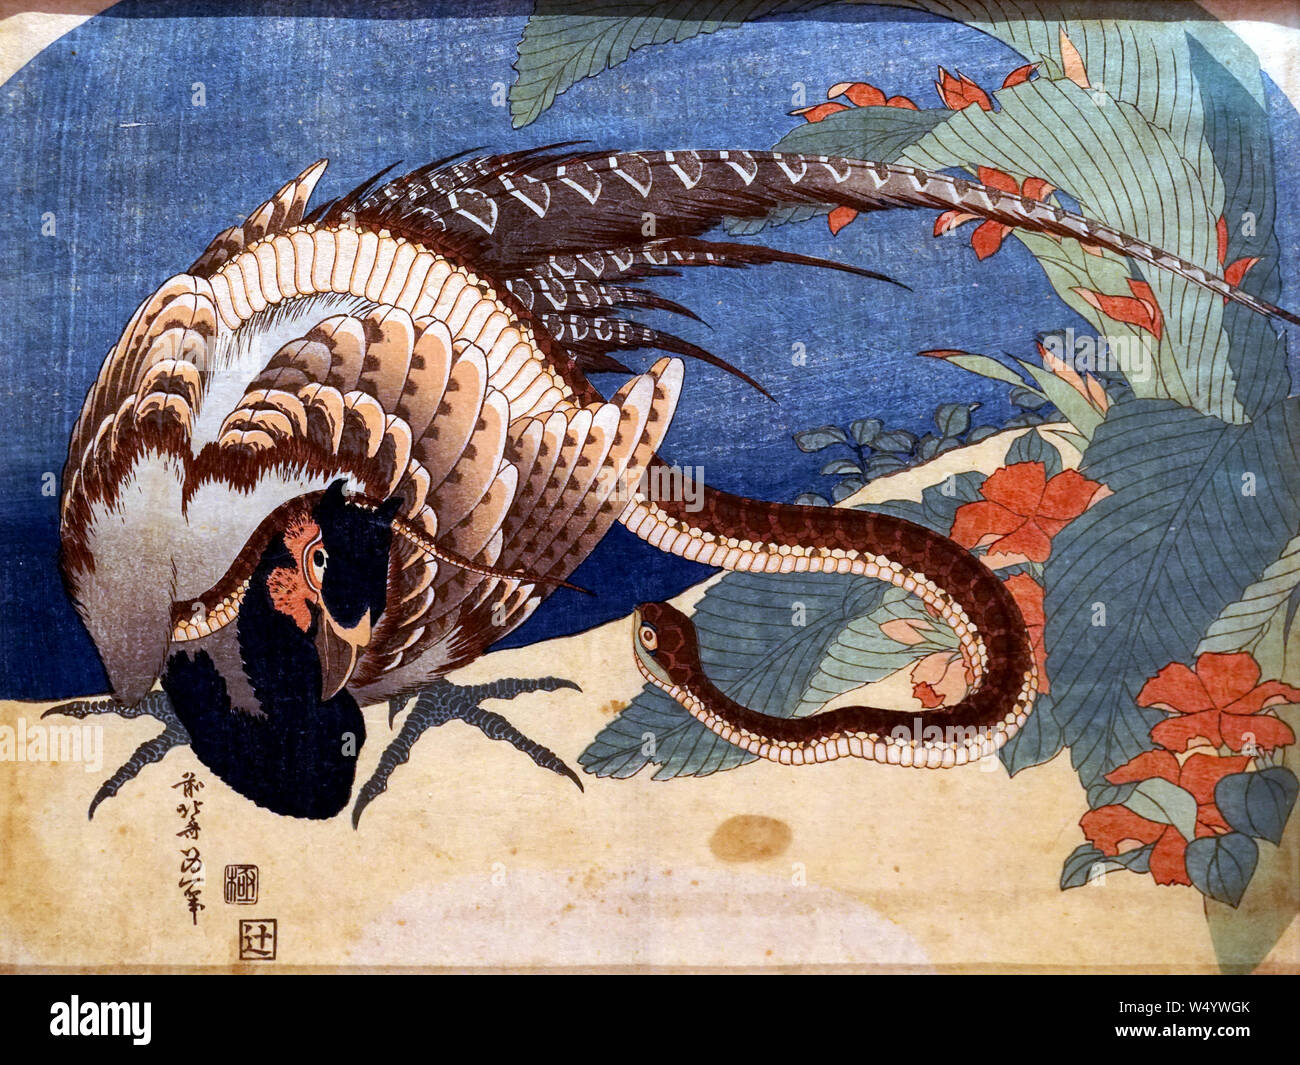 Le faisan et serpent, par Katsushika Hokusai, gravure sur bois, période Edo, 19e siècle Banque D'Images